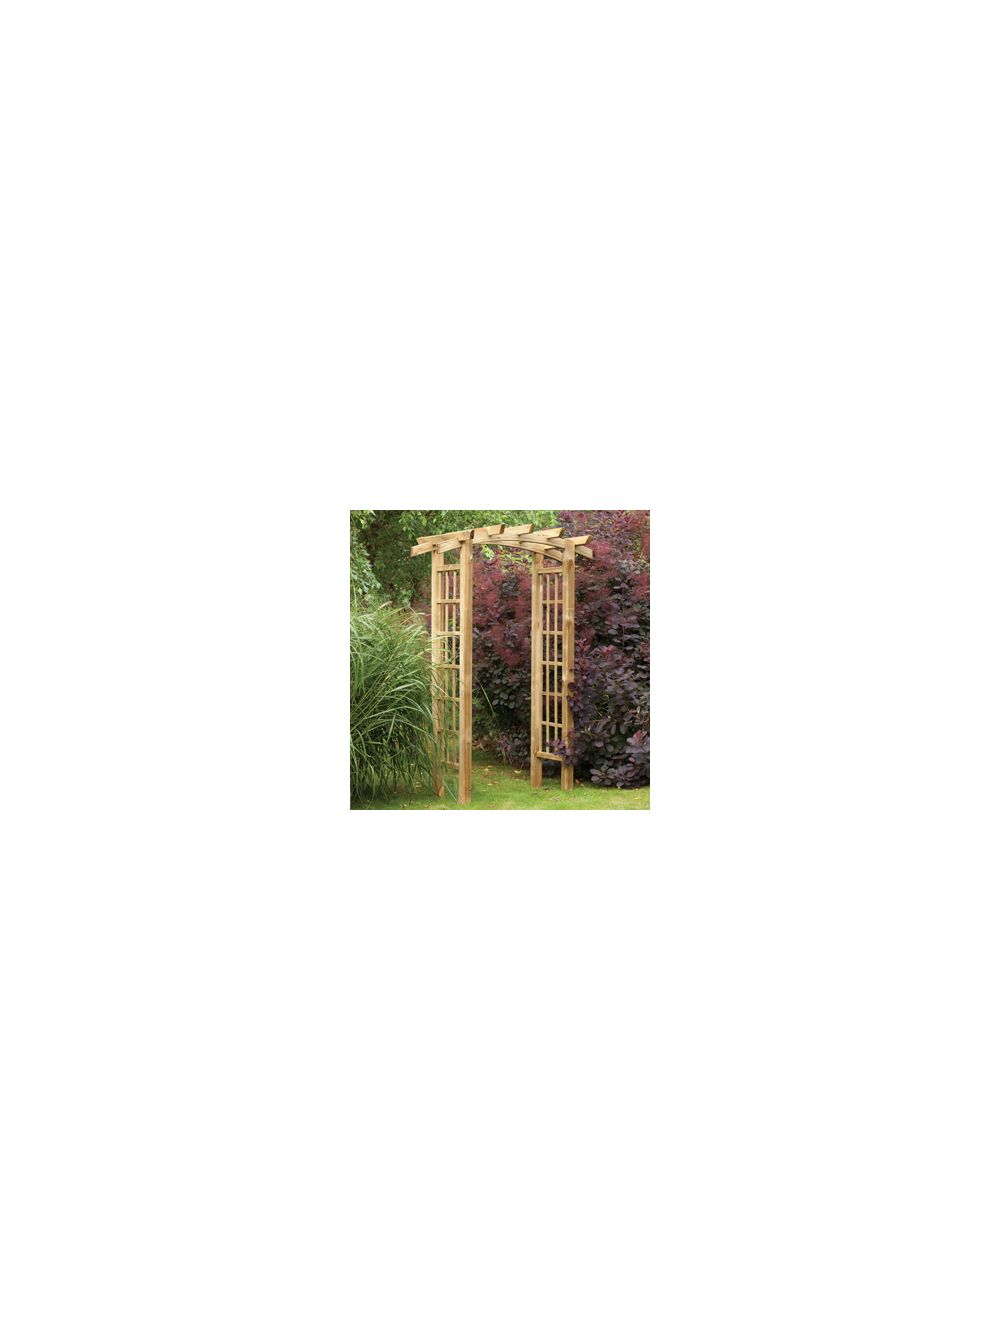 Forest Garden Ryeford Arch For, Forest Garden Ryeford Wooden Curved Trellis Archicad